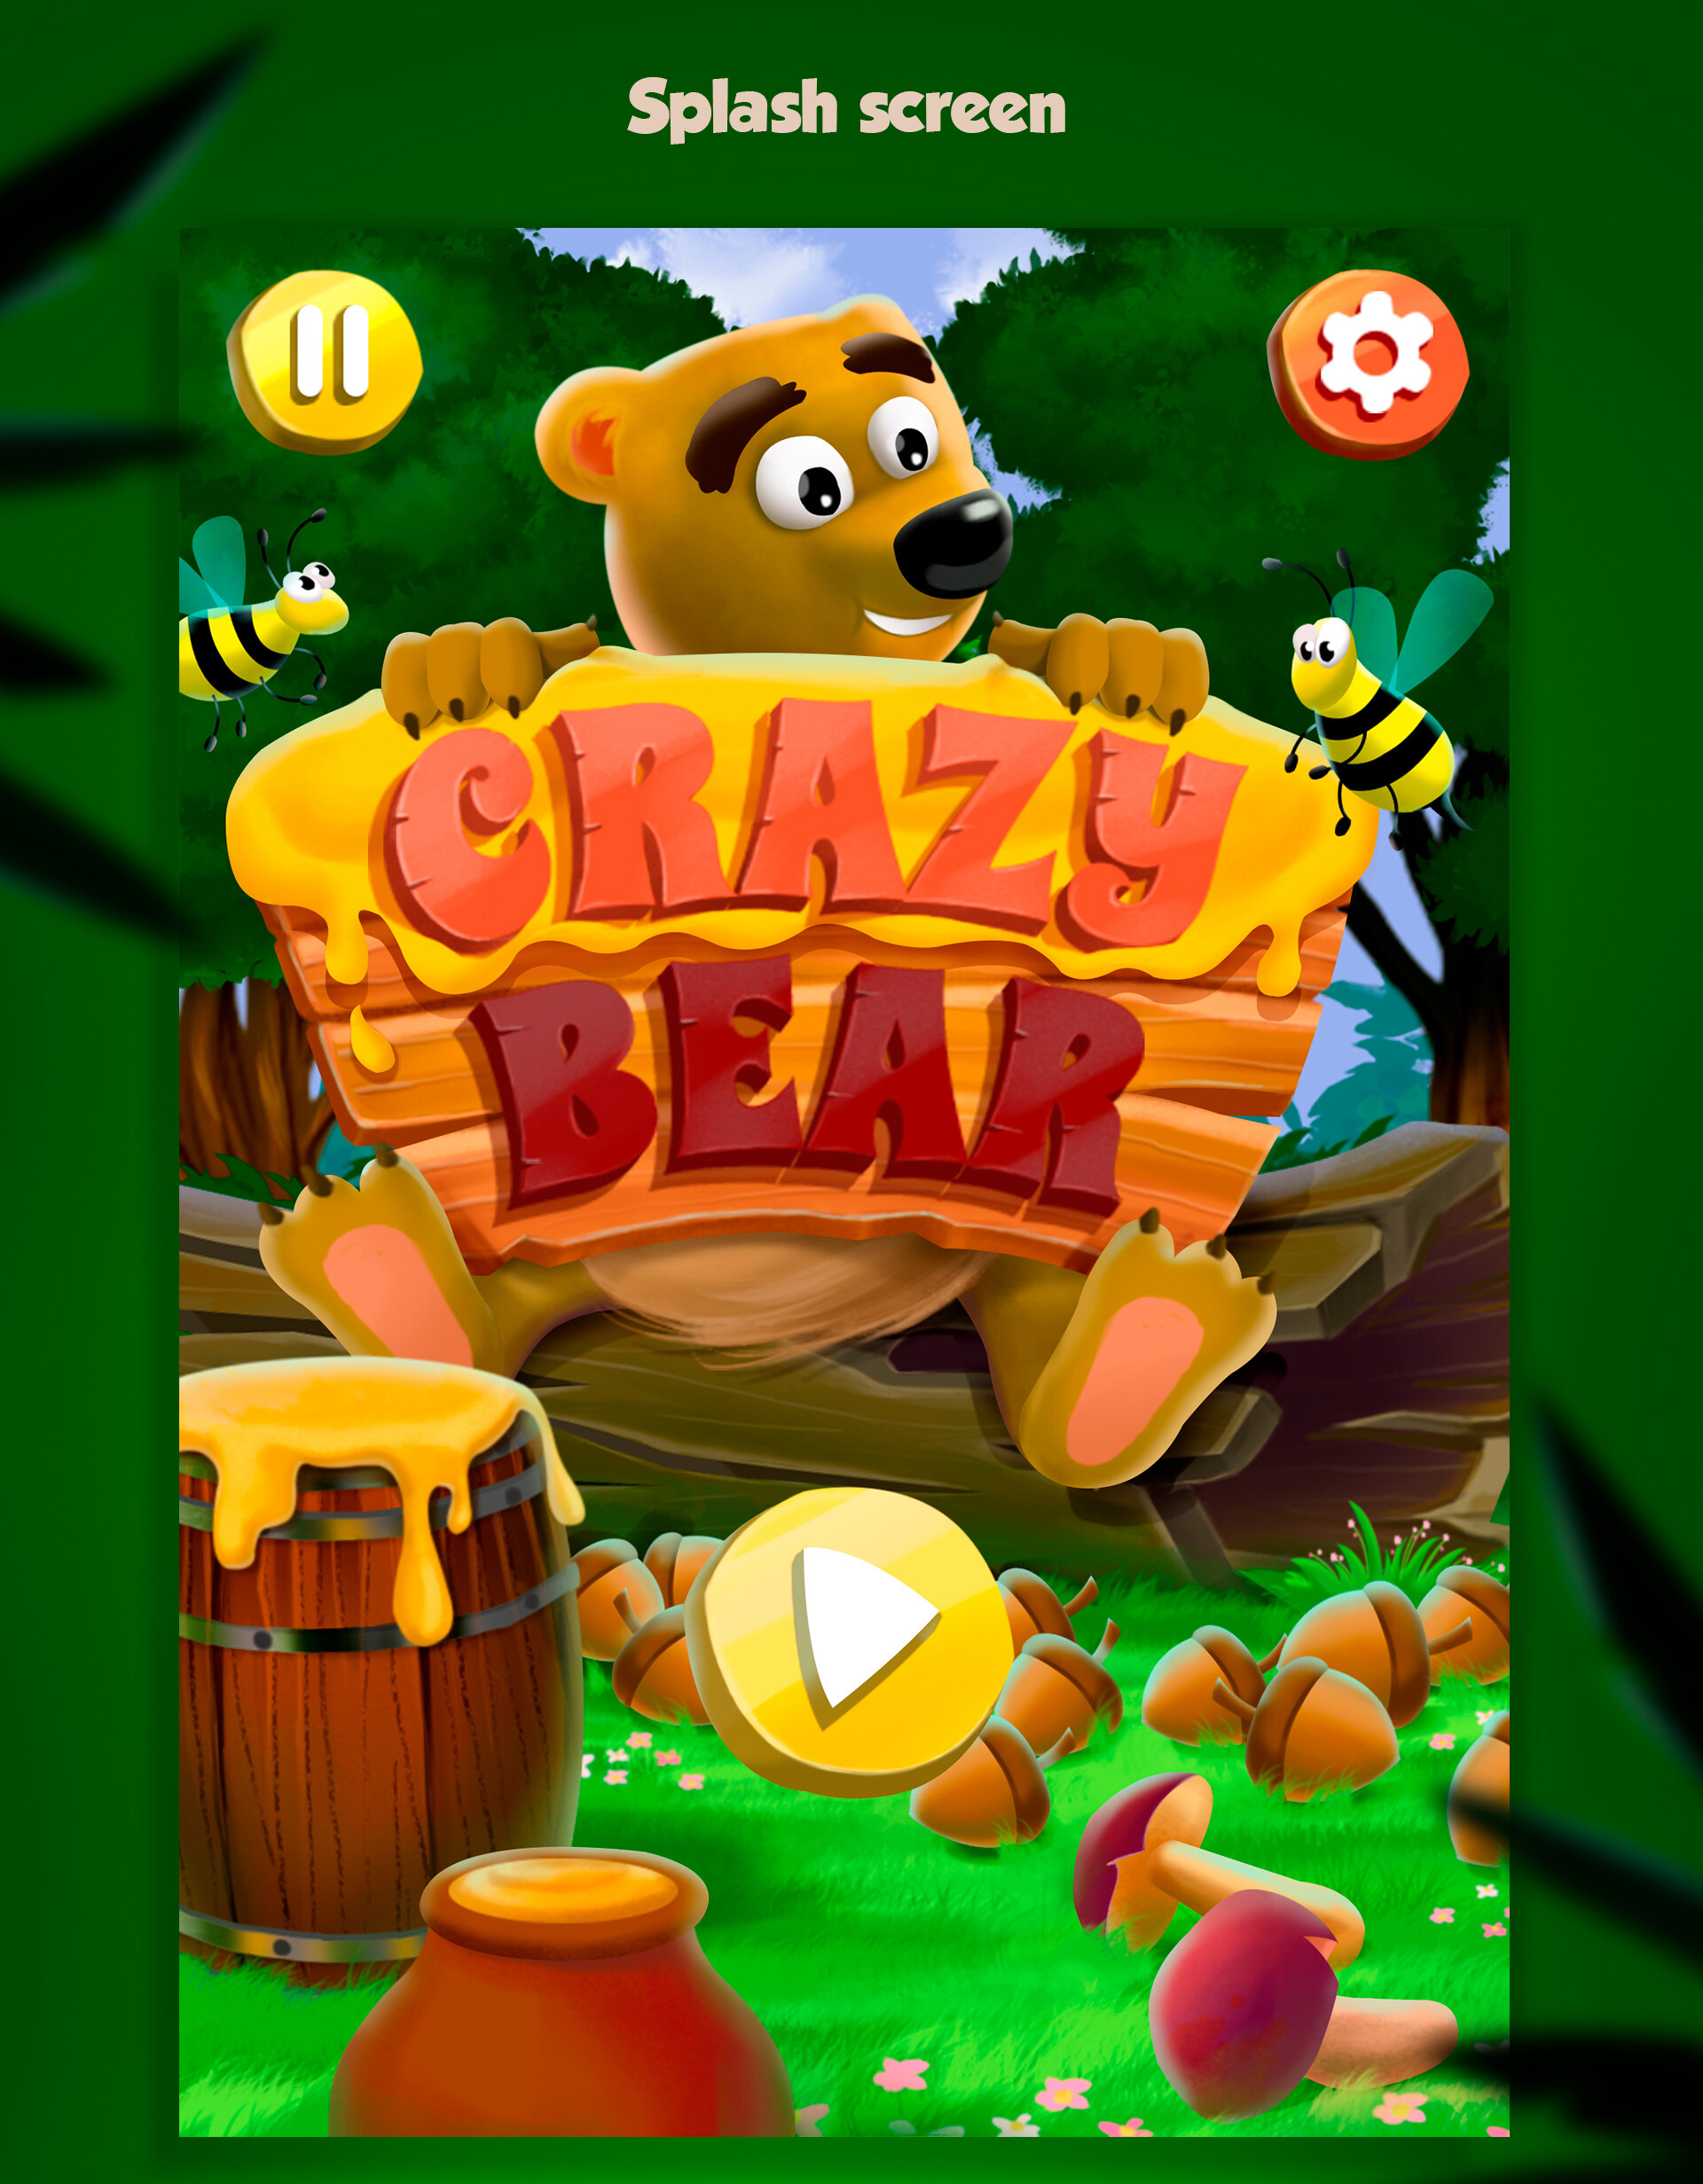 ArtStation - Crazy bear. 2D platform game